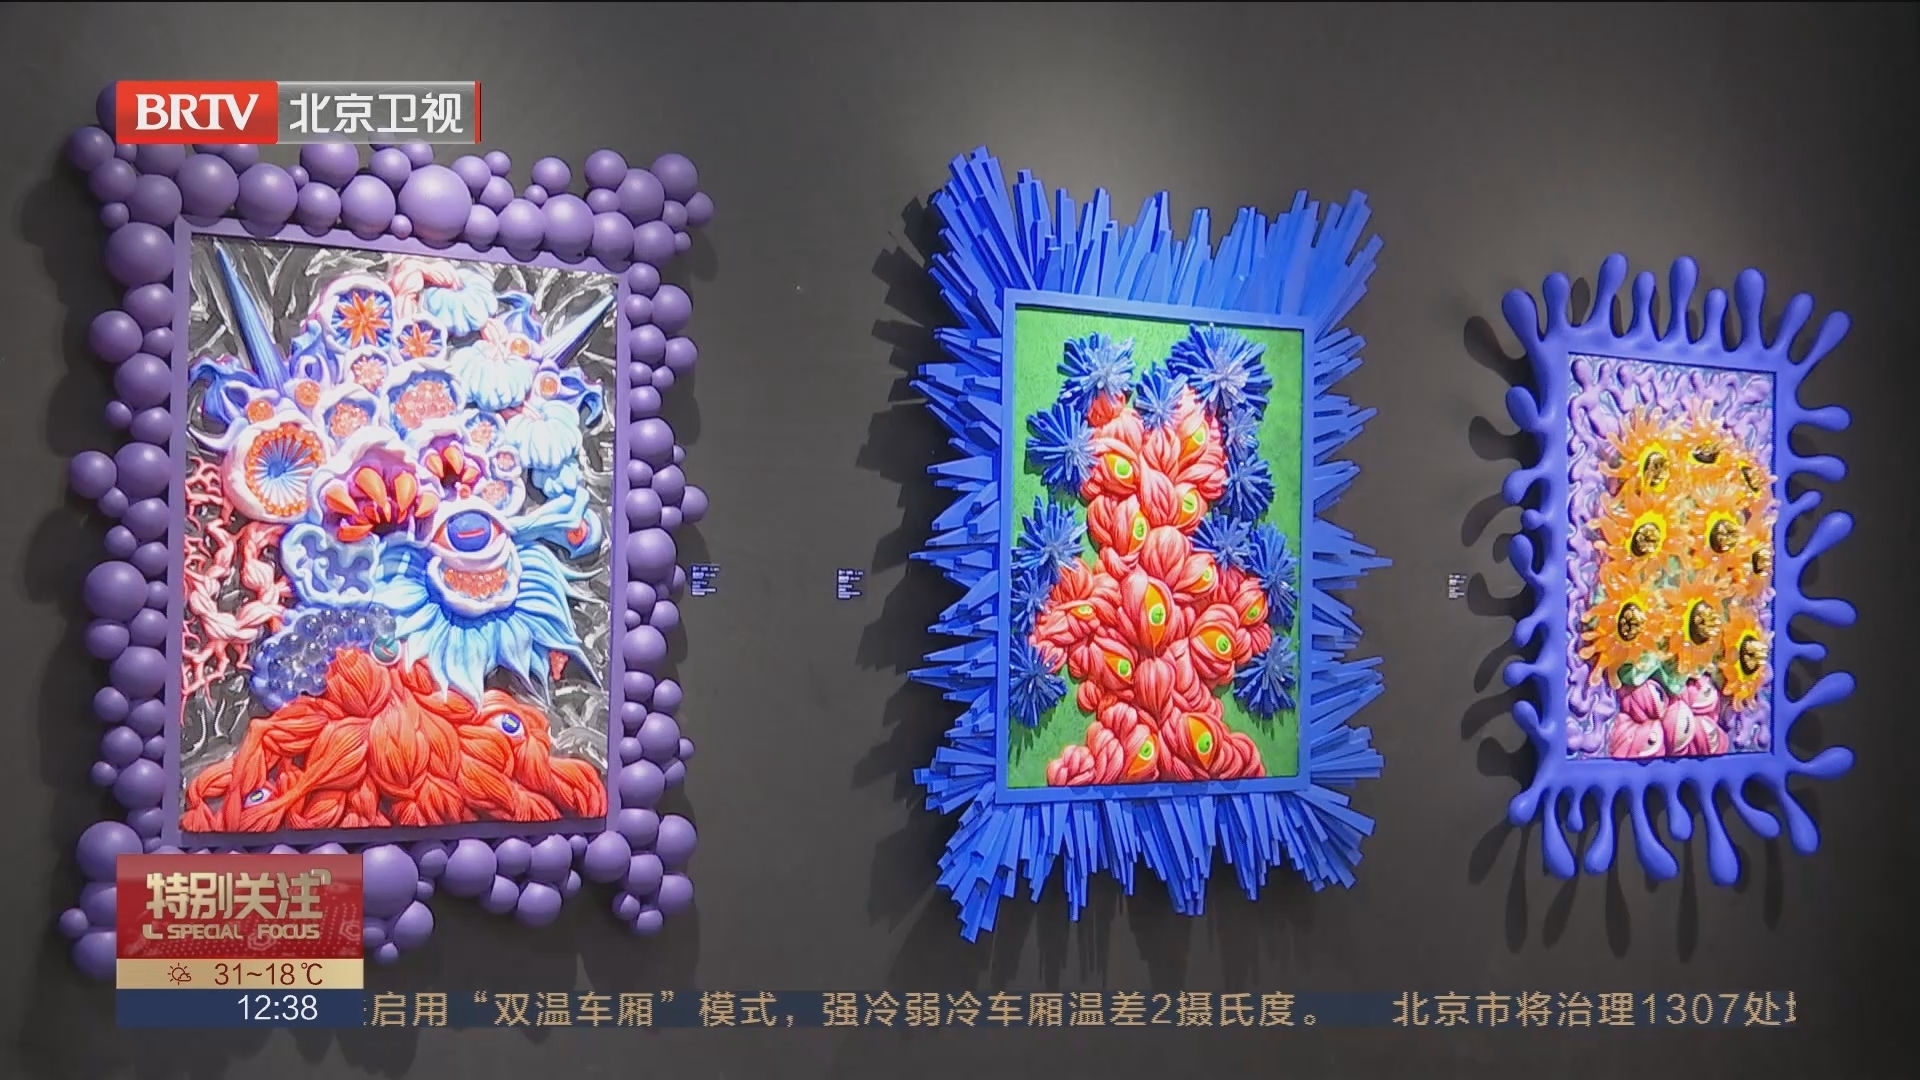 “艺览北京”重启 到北展来一场当代艺术大赏